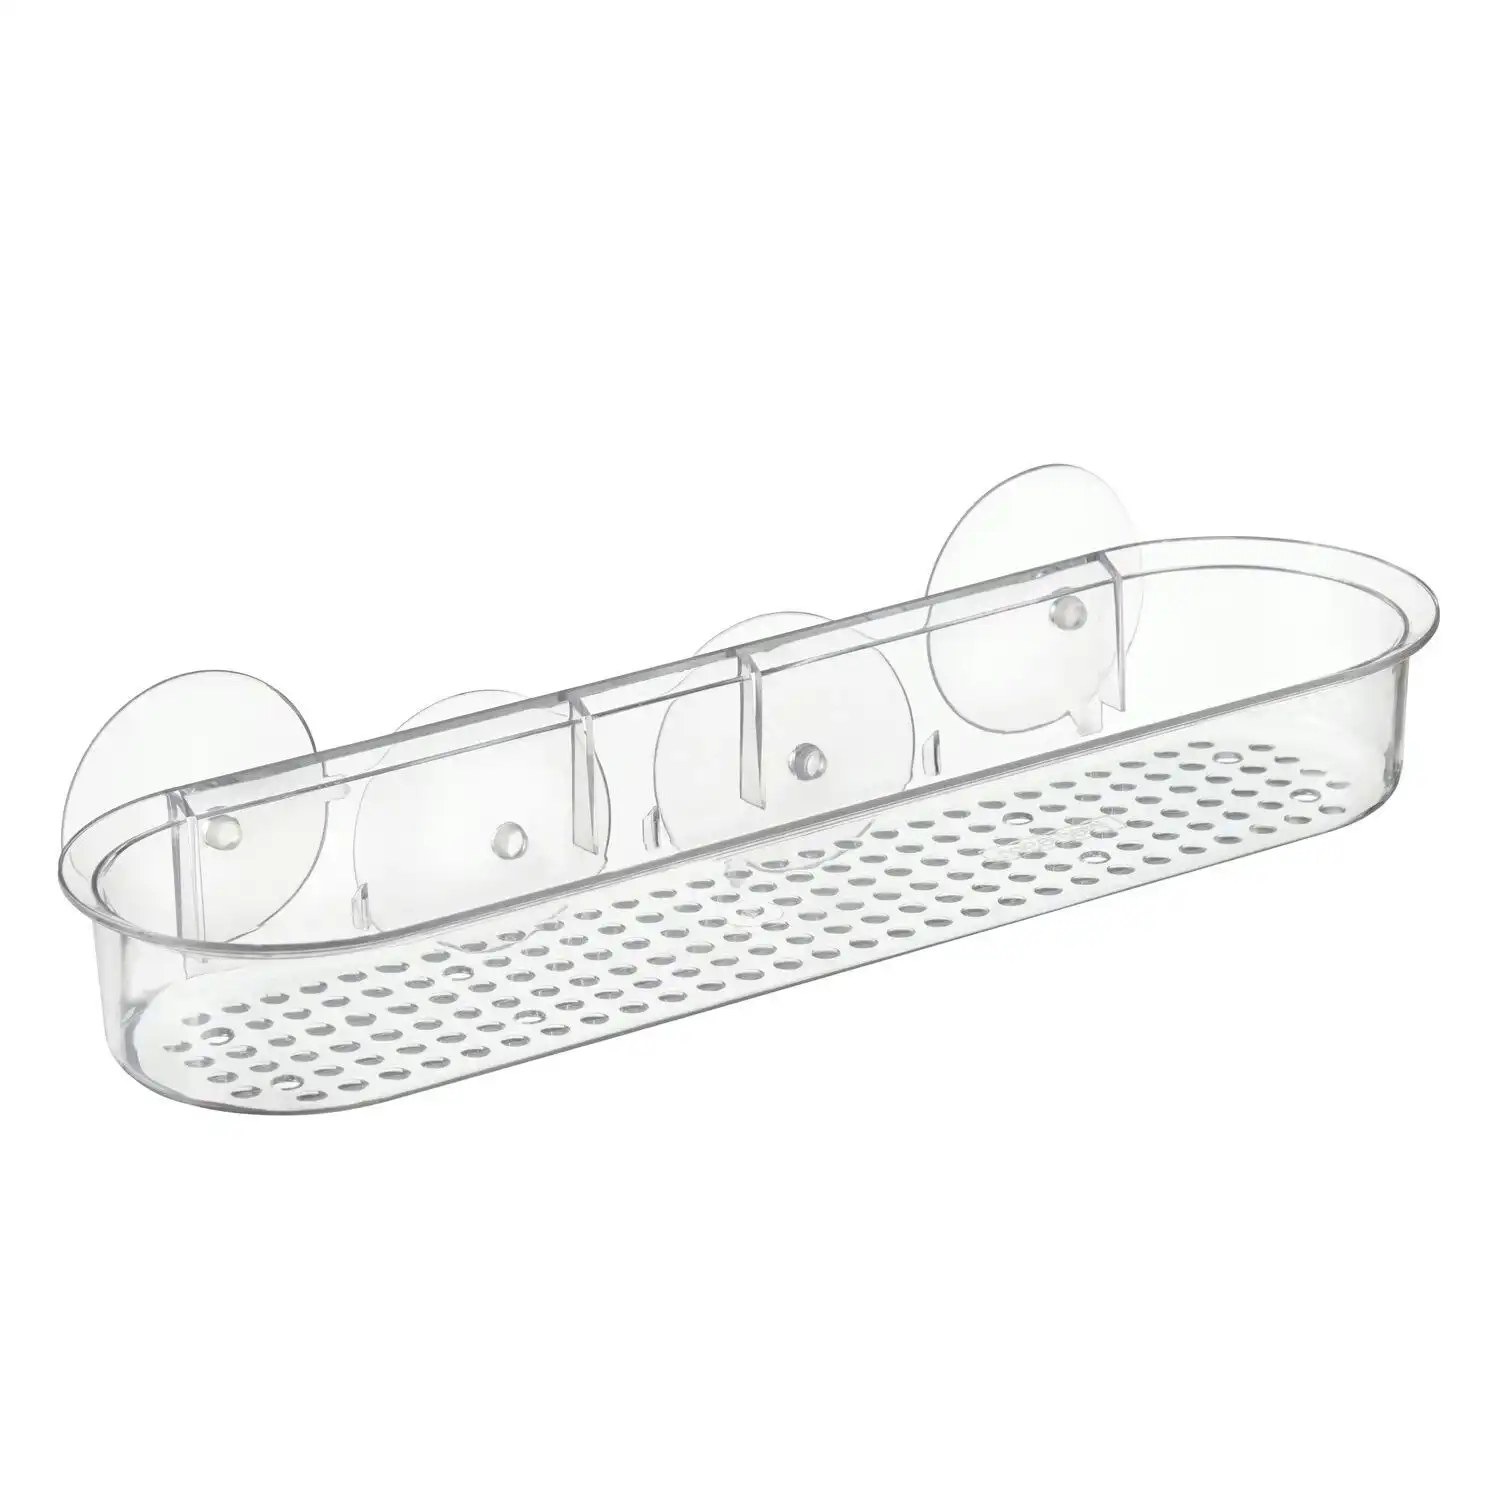 Idesign Classic 38x11cm Suction Shelf Shower/Tub Caddy Organiser Storage Clear